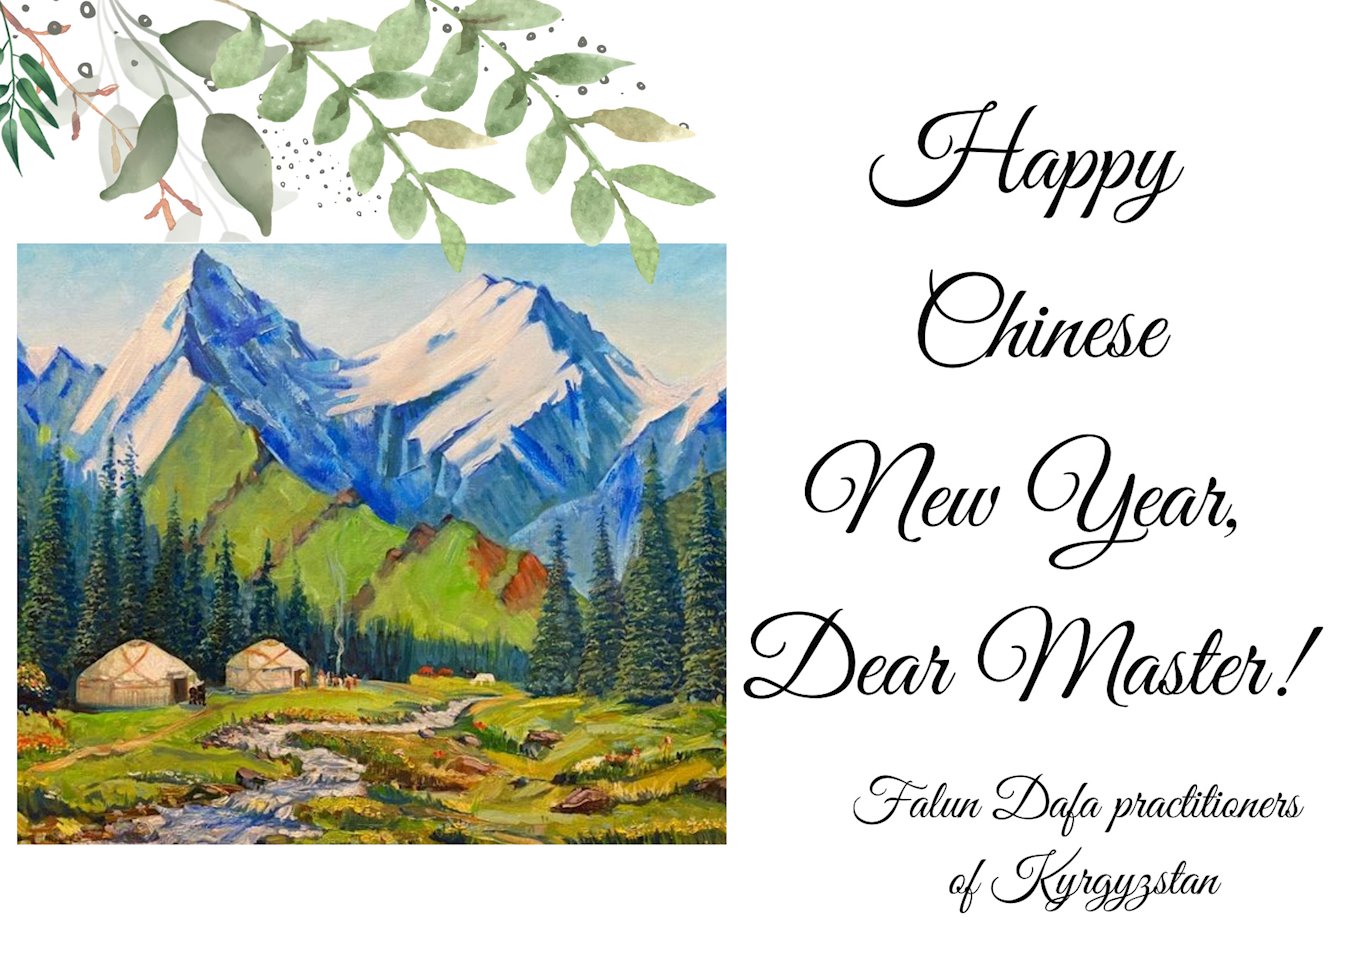 Image for article Les pratiquants de Falun Dafa en dehors de la Chine souhaitent respectueusement au vénérable Maître Li Hongzhi un bon Nouvel An chinois